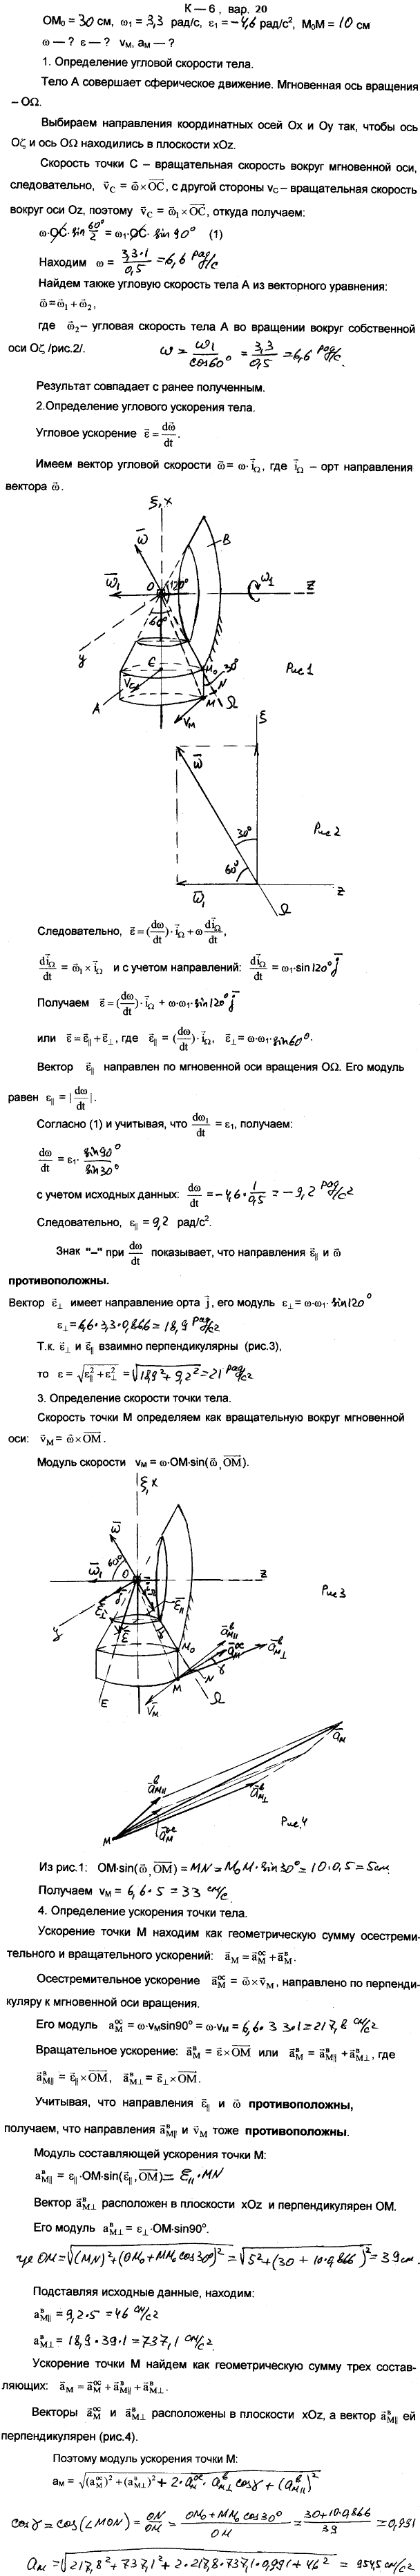 Задание К.6 вариант 20. OM0=30 см; ω1=3,3 рад/с; ε1=4,6 рад/с^2; M0M=10 см